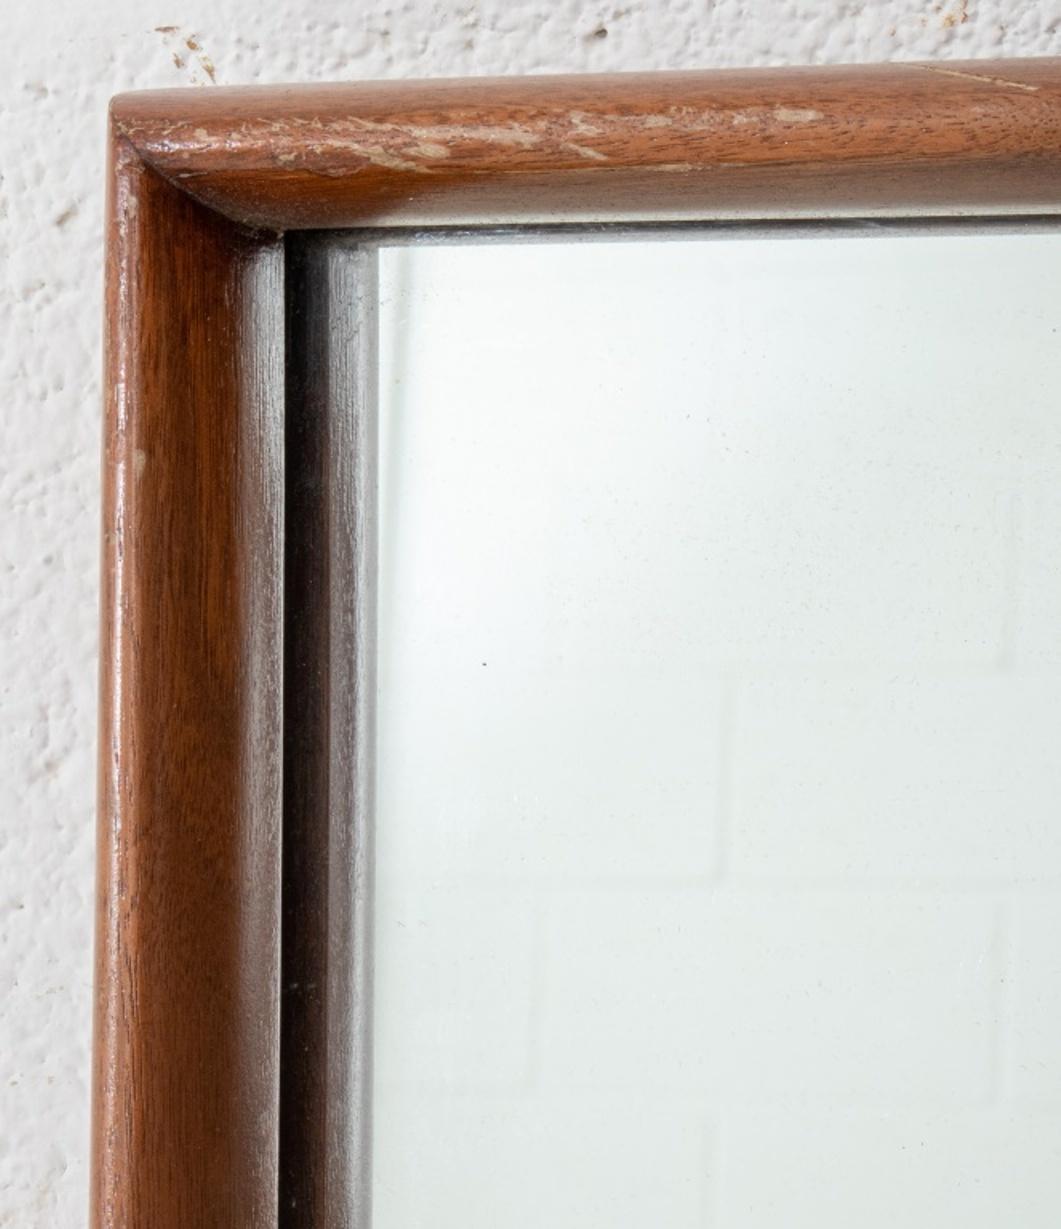 Miroir rectangulaire encadré en noyer John Widdicomb, moderne du milieu du siècle, étiquette Widdicomb au dos.

Dimensions : 33